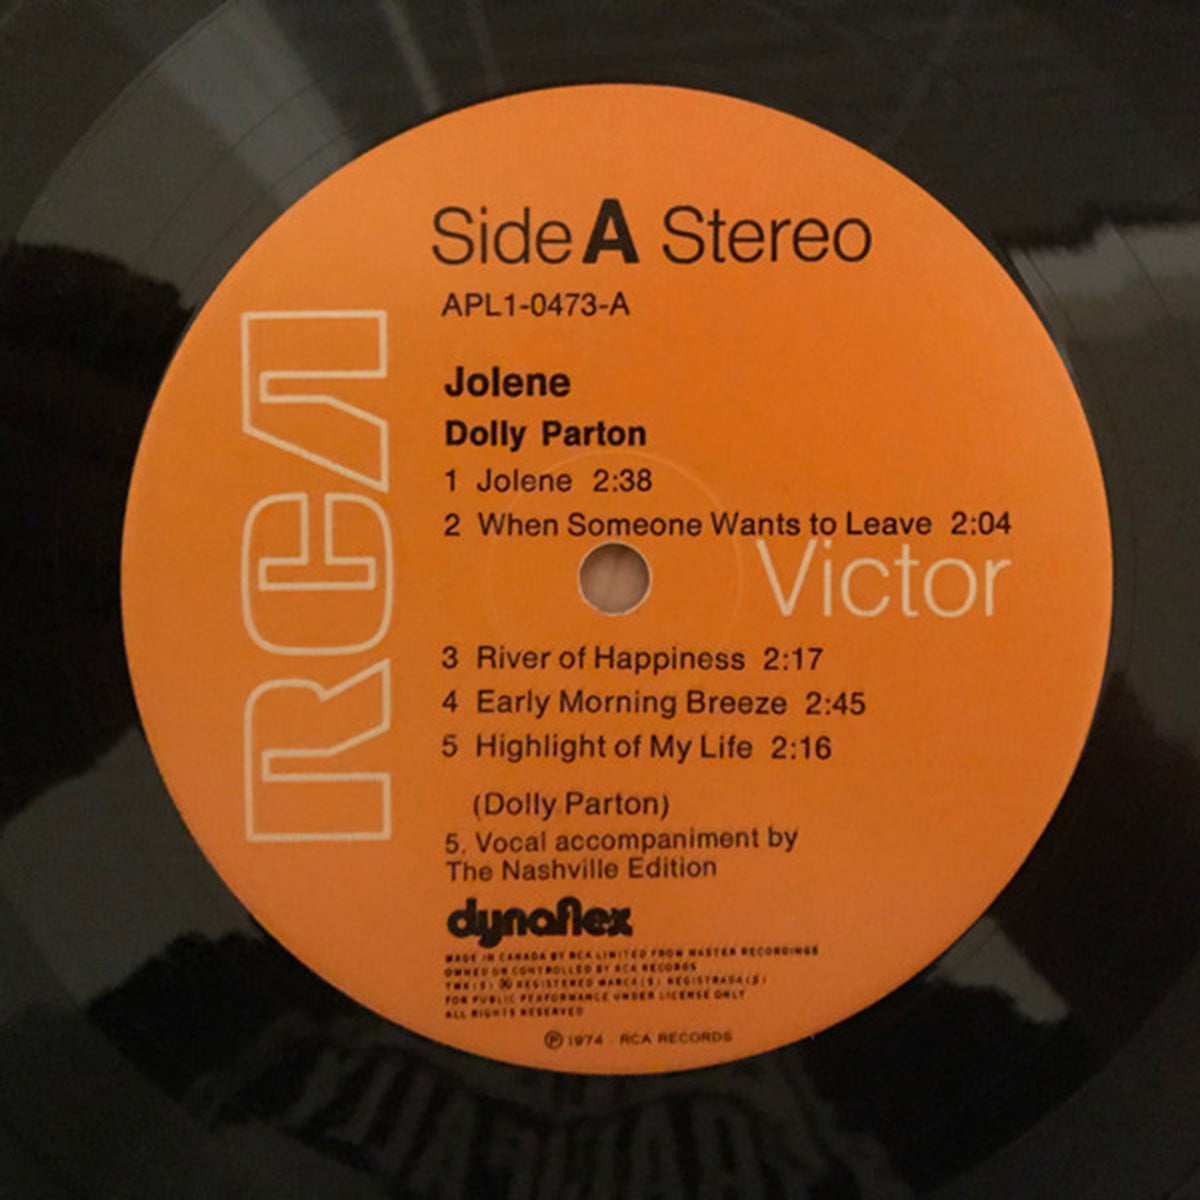 Dolly Parton – Jolene - 1974 Rare